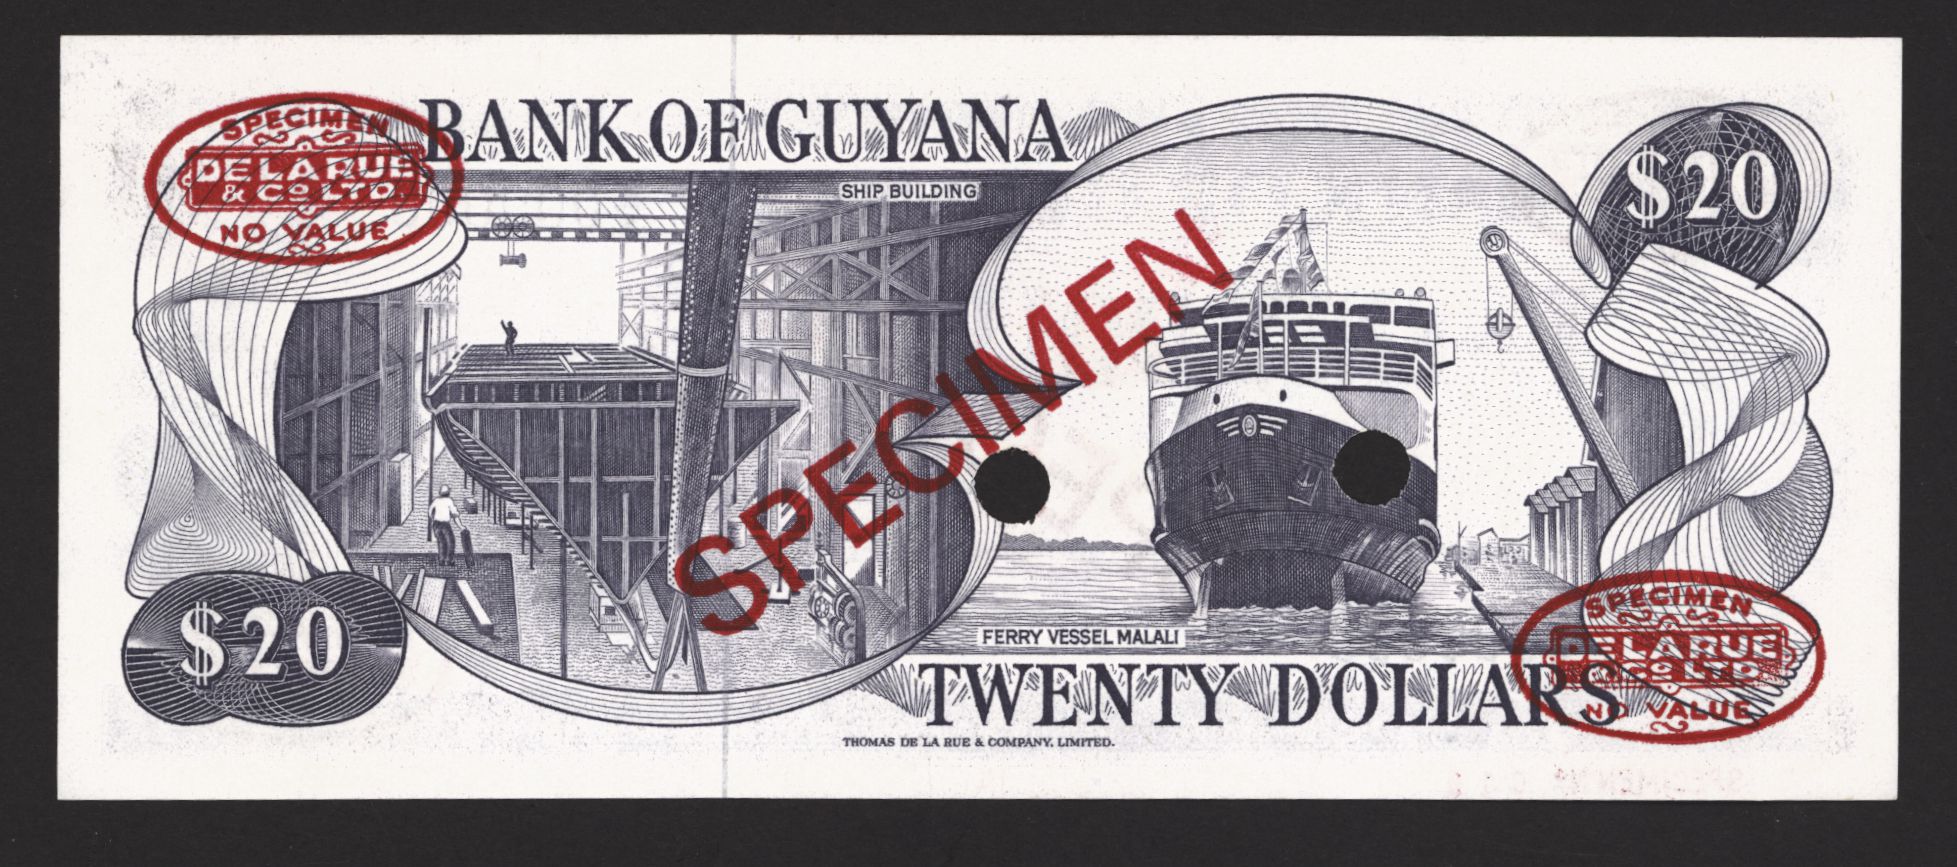 Bank of Guyana N/A